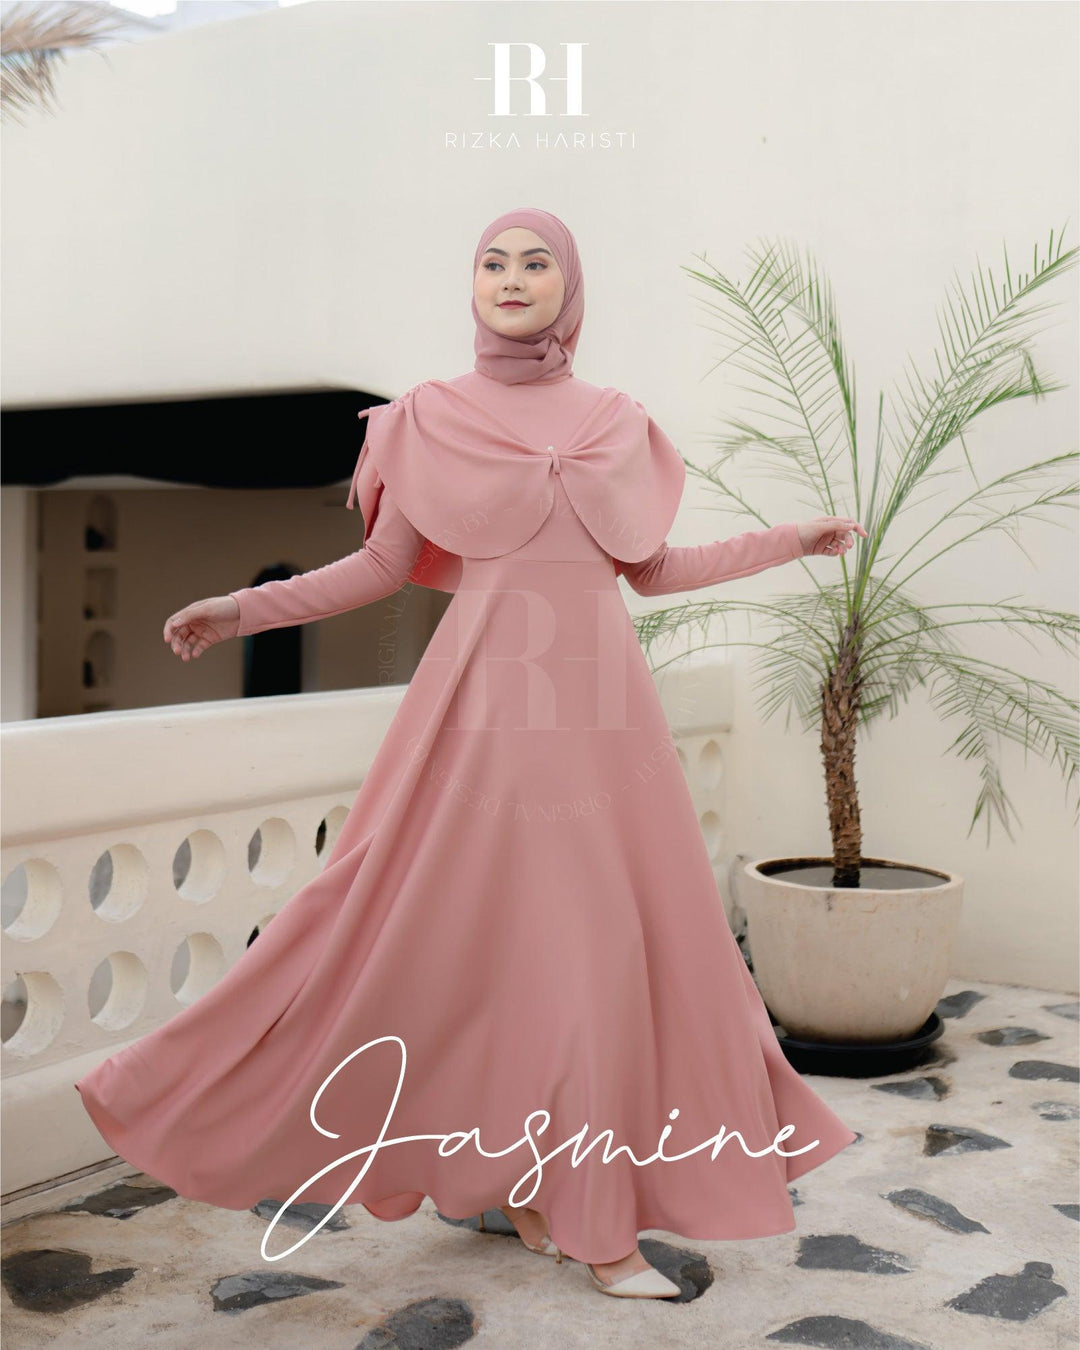 Jasmine - RH by Rizka Haristi